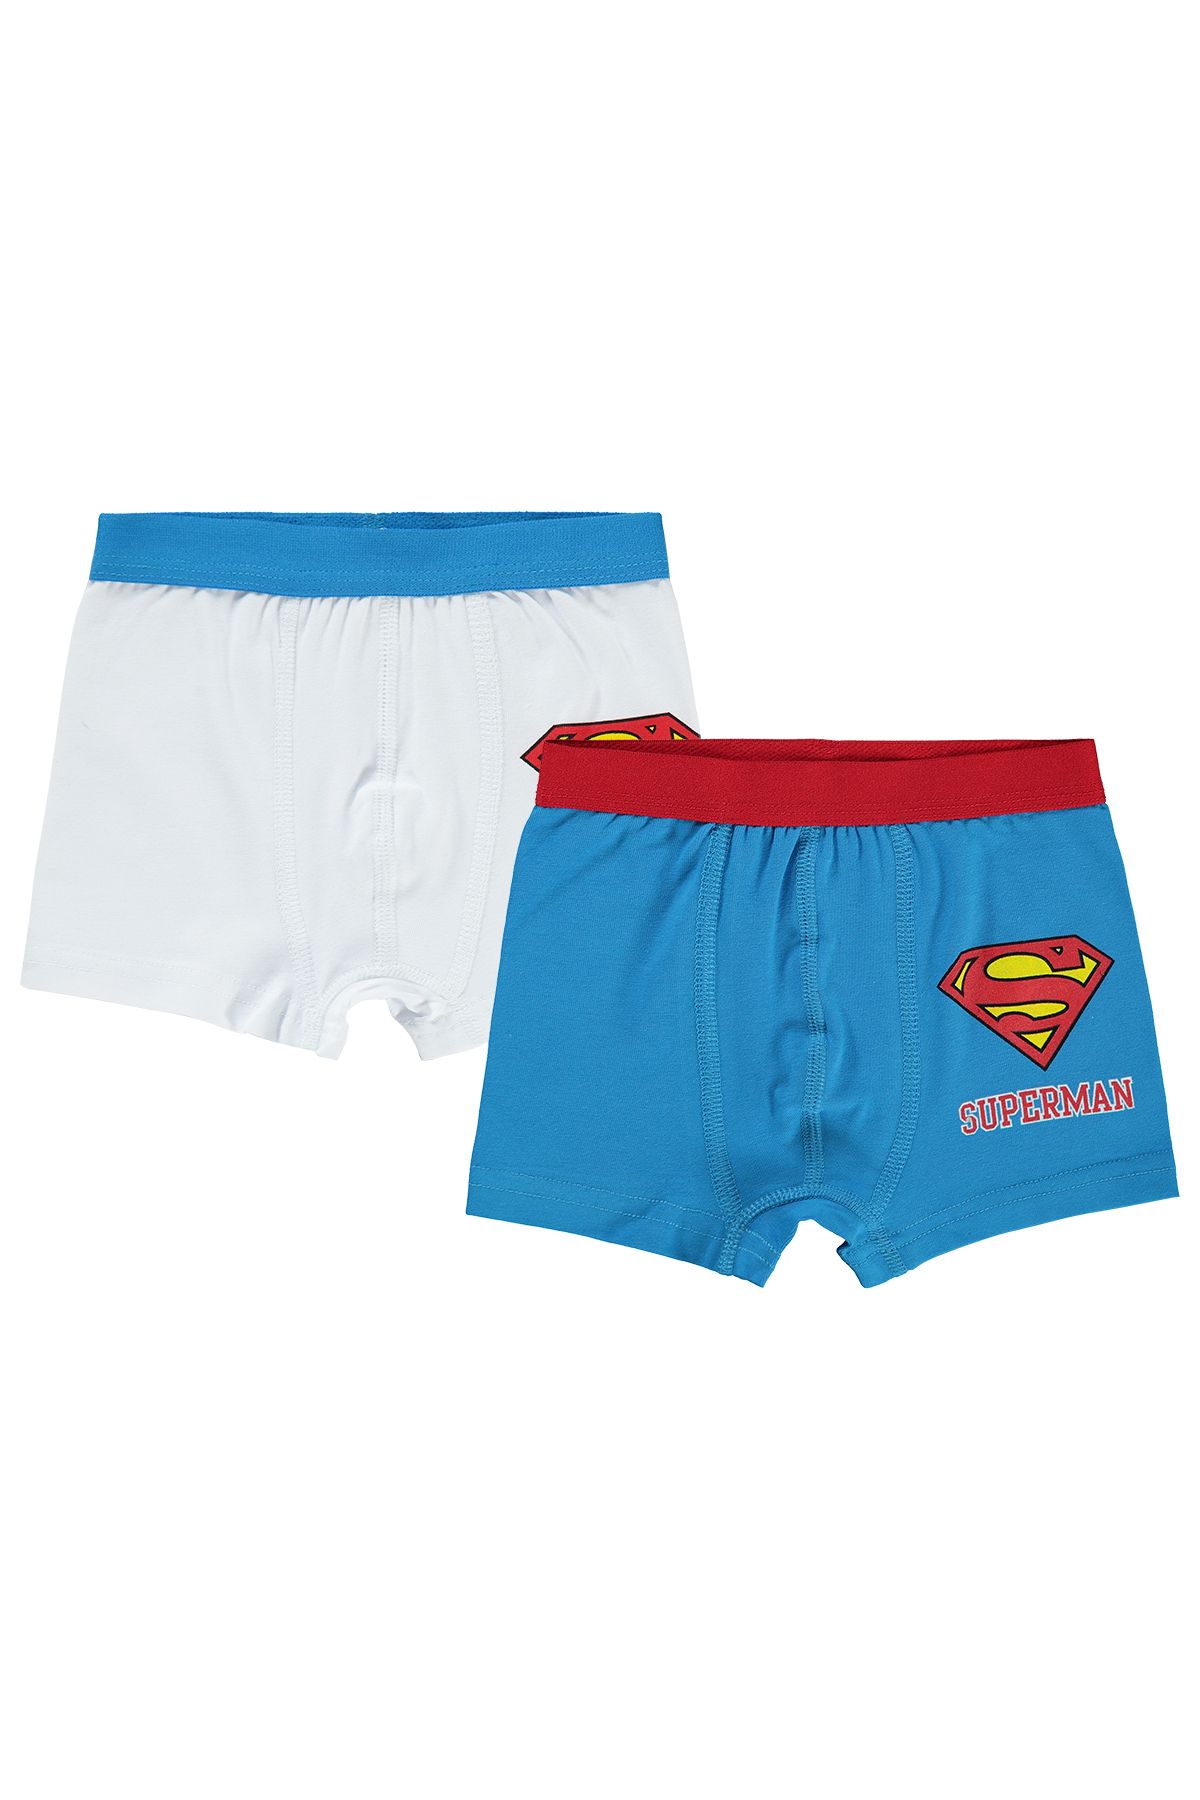 Superman Süperman Erkek Çocuk Boxer 2-10 Yaş Mavi